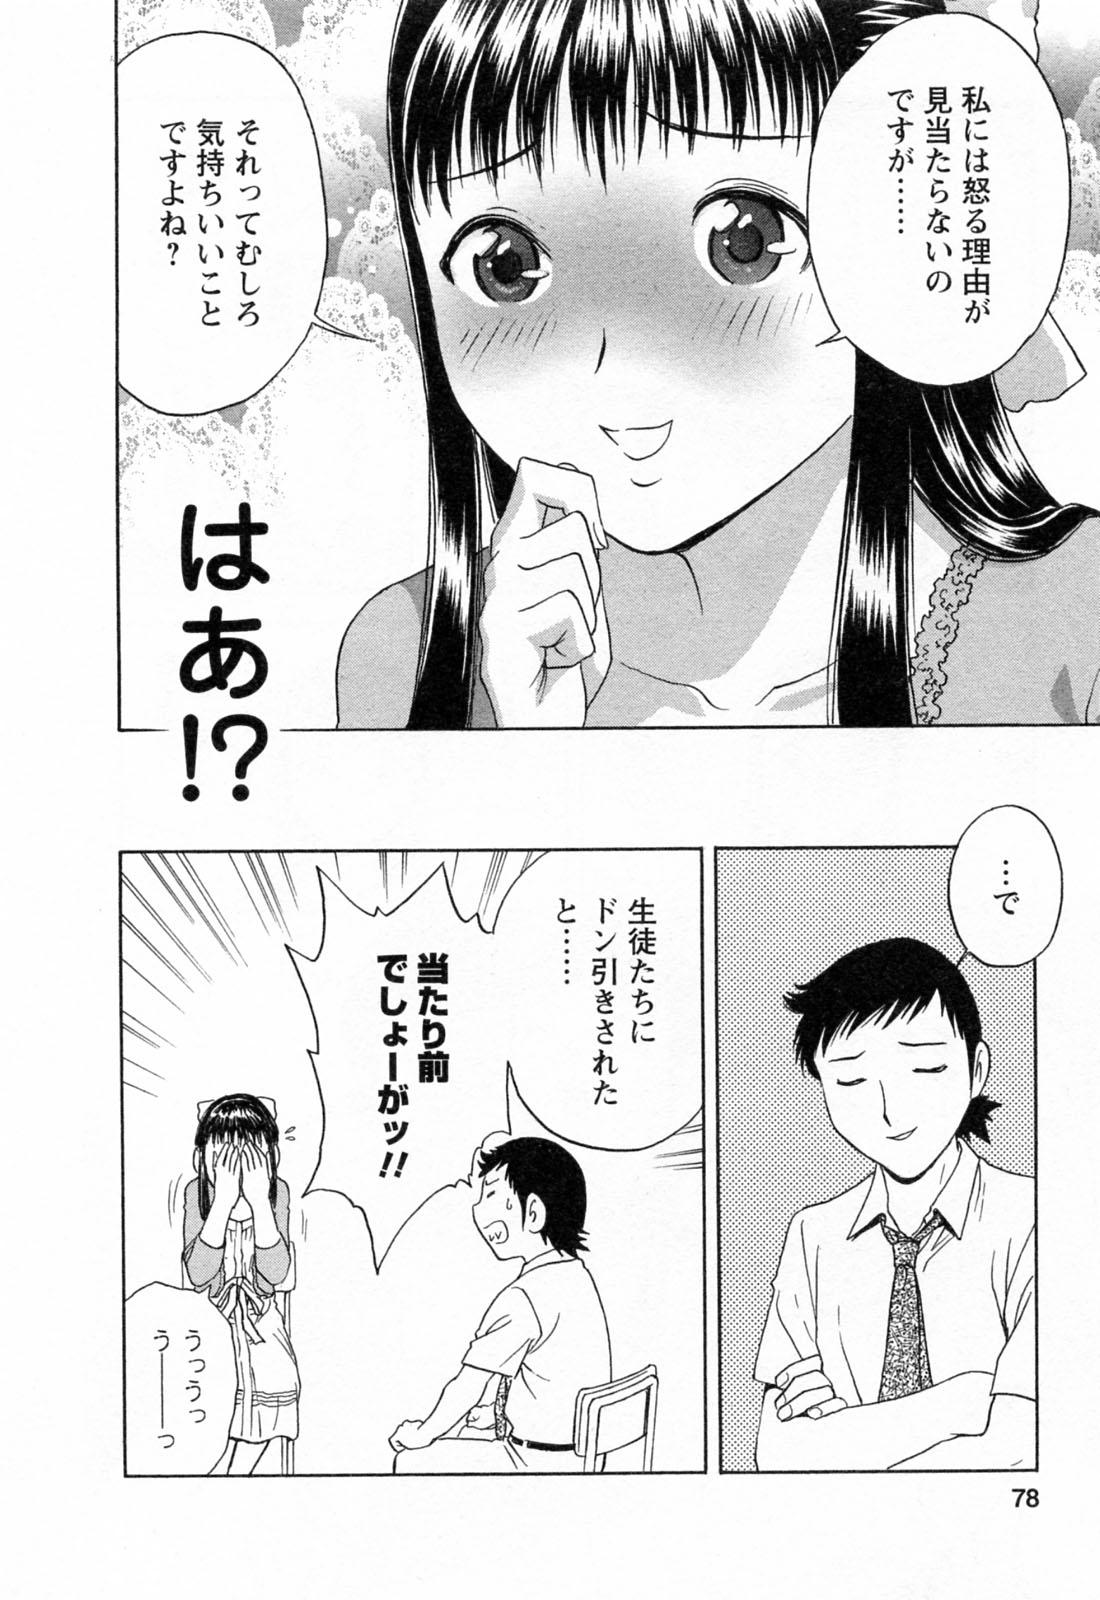 [Hidemaru] Mo-Retsu! Boin Sensei (Boing Boing Teacher) Vol.4 79